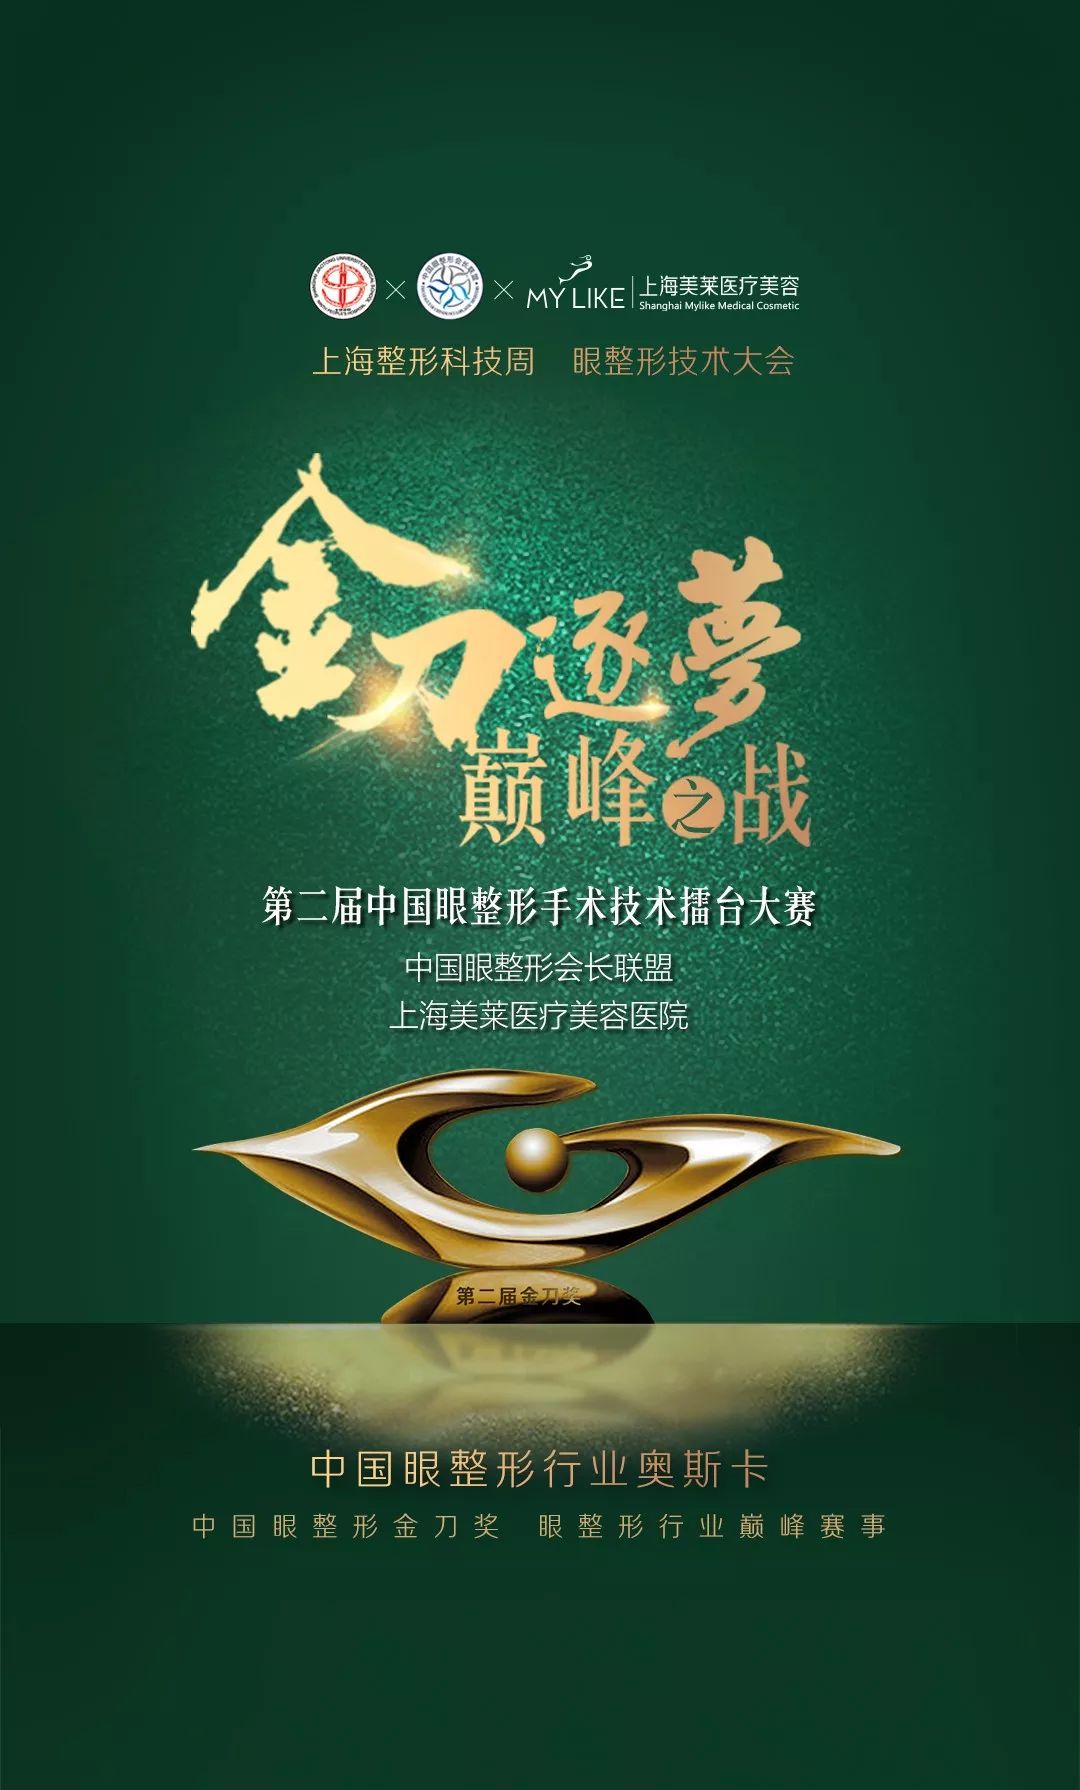 第二届中国眼整形手术擂台大赛即将召开